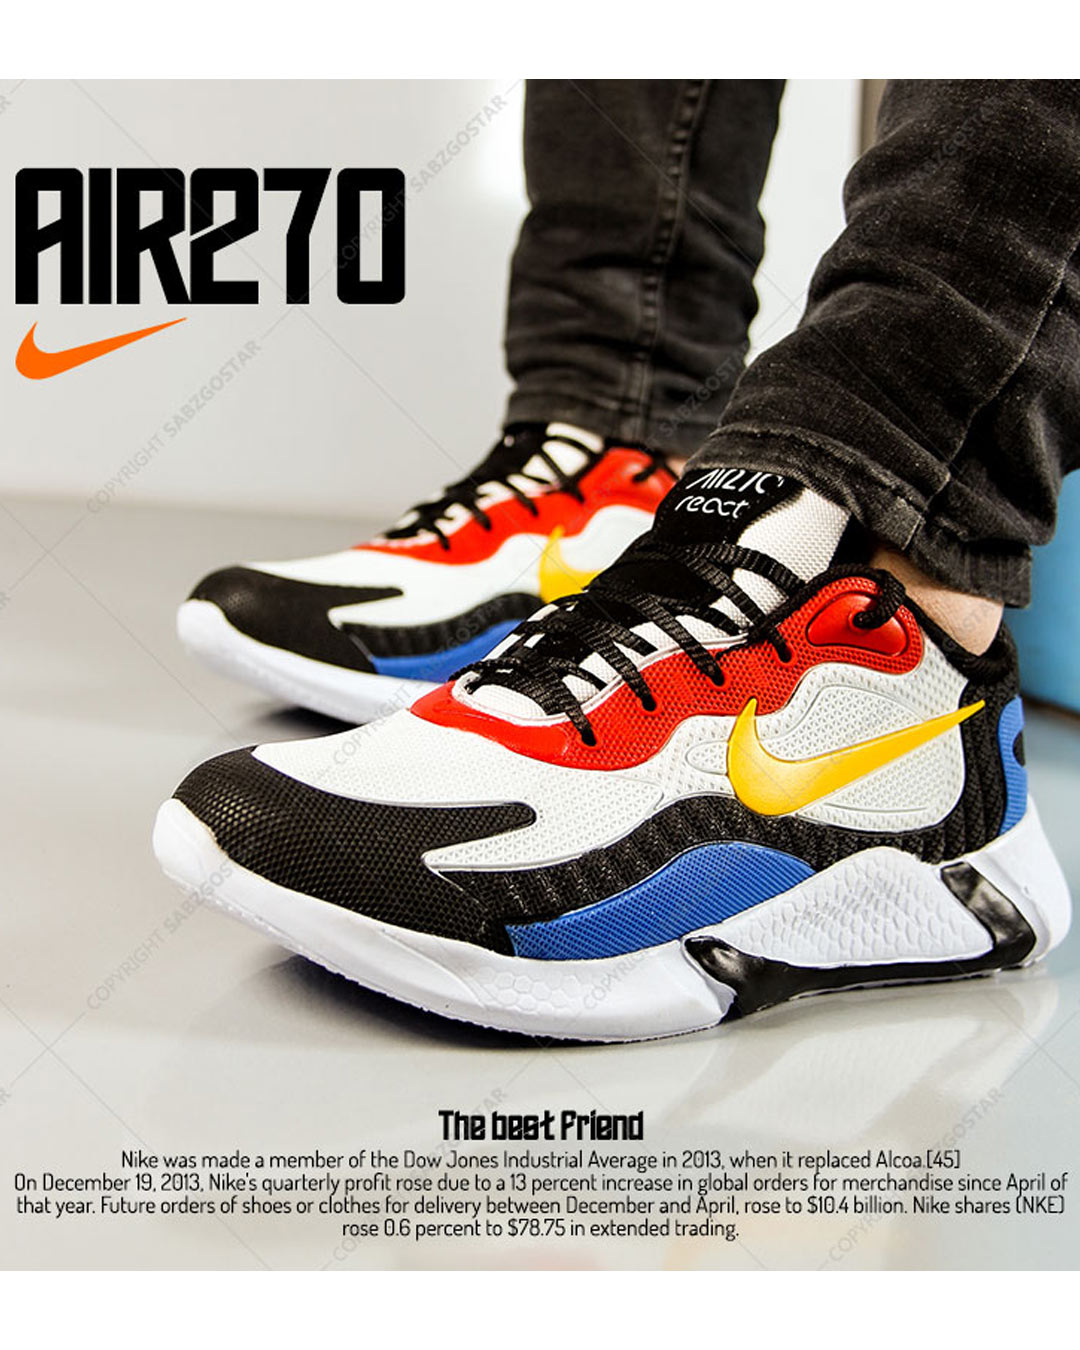 کفش مردانه Nike مدل Air270 (زرد قرمز)